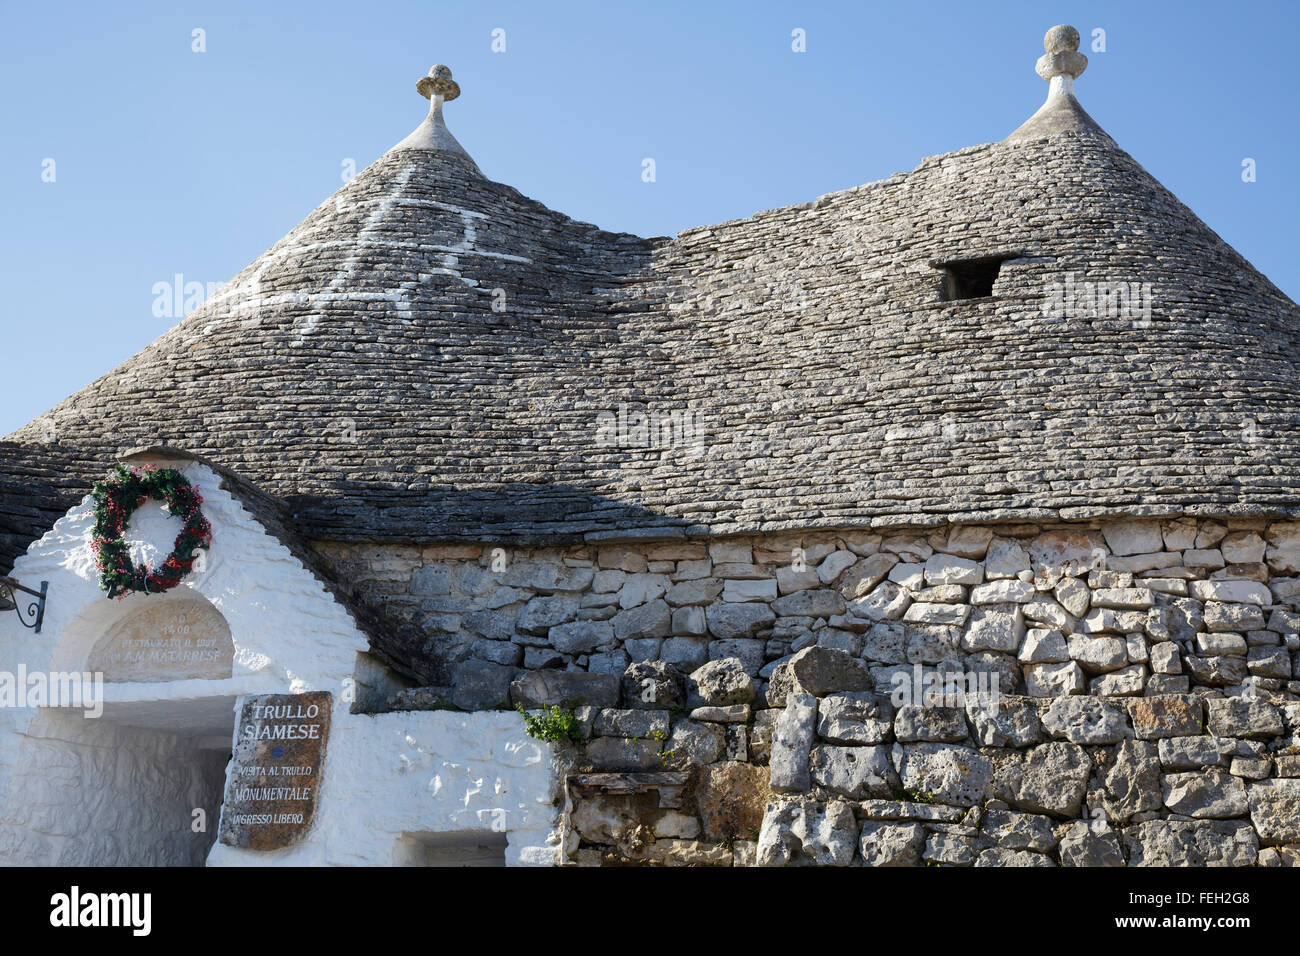 Trullo Siamese, Alberobello, Puglia, Italy Stock Photo